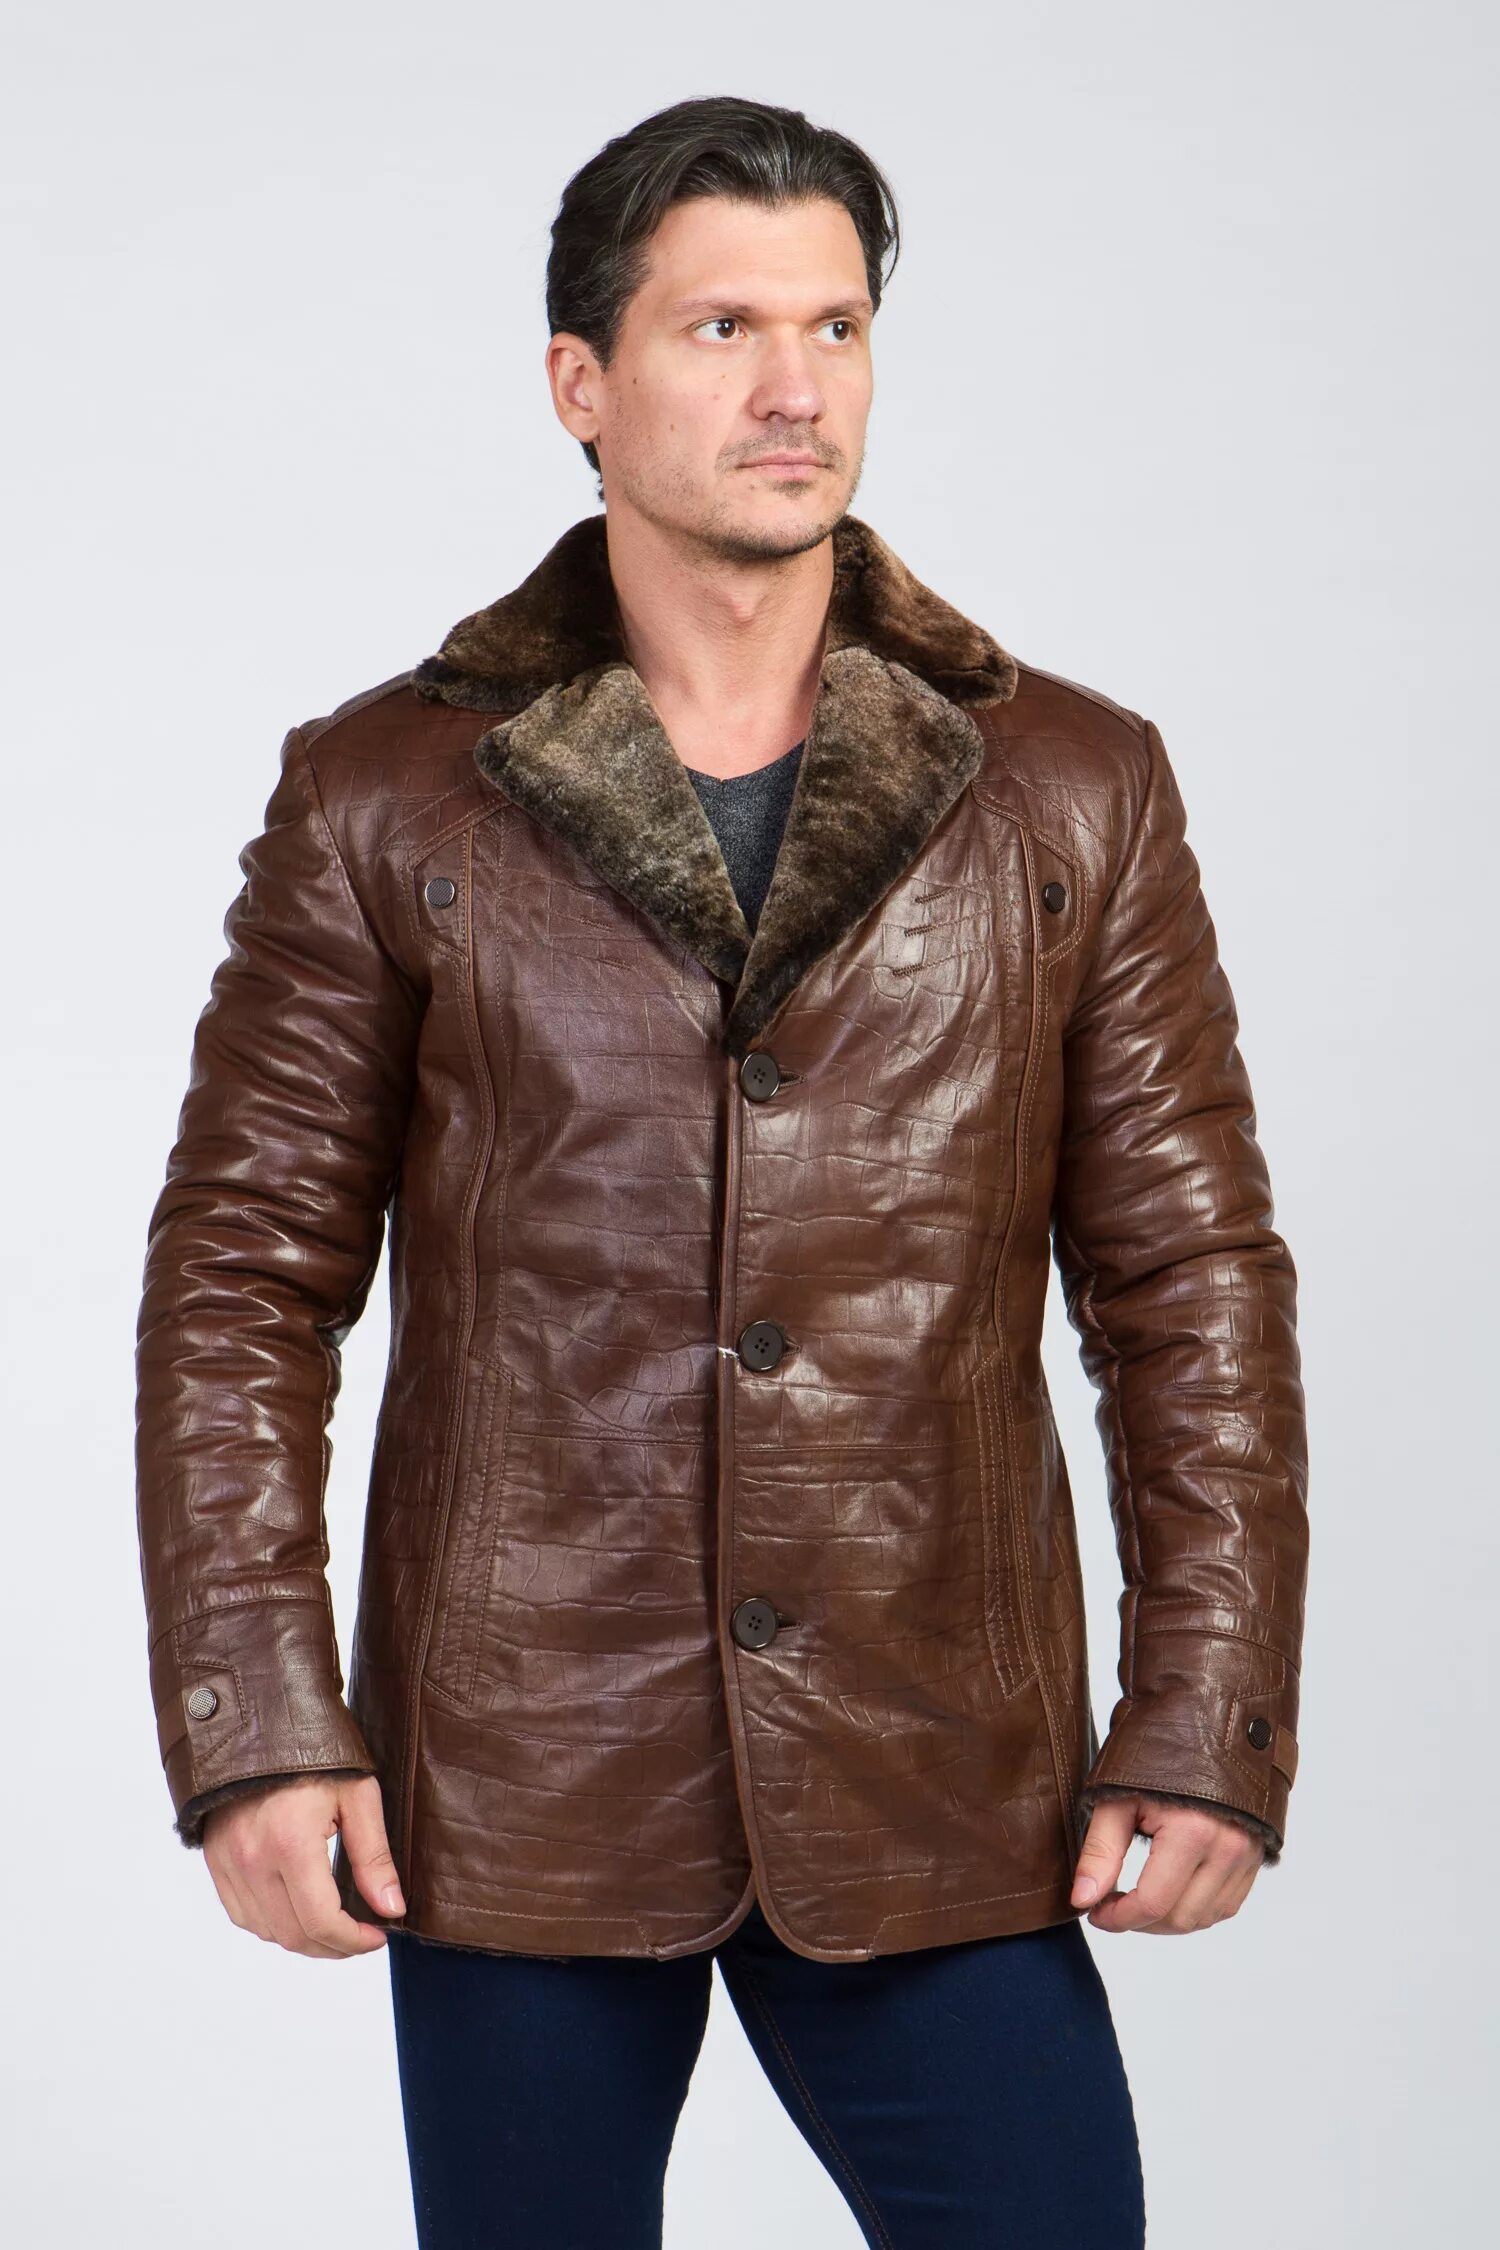 Коричневая кожаная куртка с мехом мужская. Кожаная куртка мужская зимняя коричневая. Мужские куртки зимние натуральной кожи